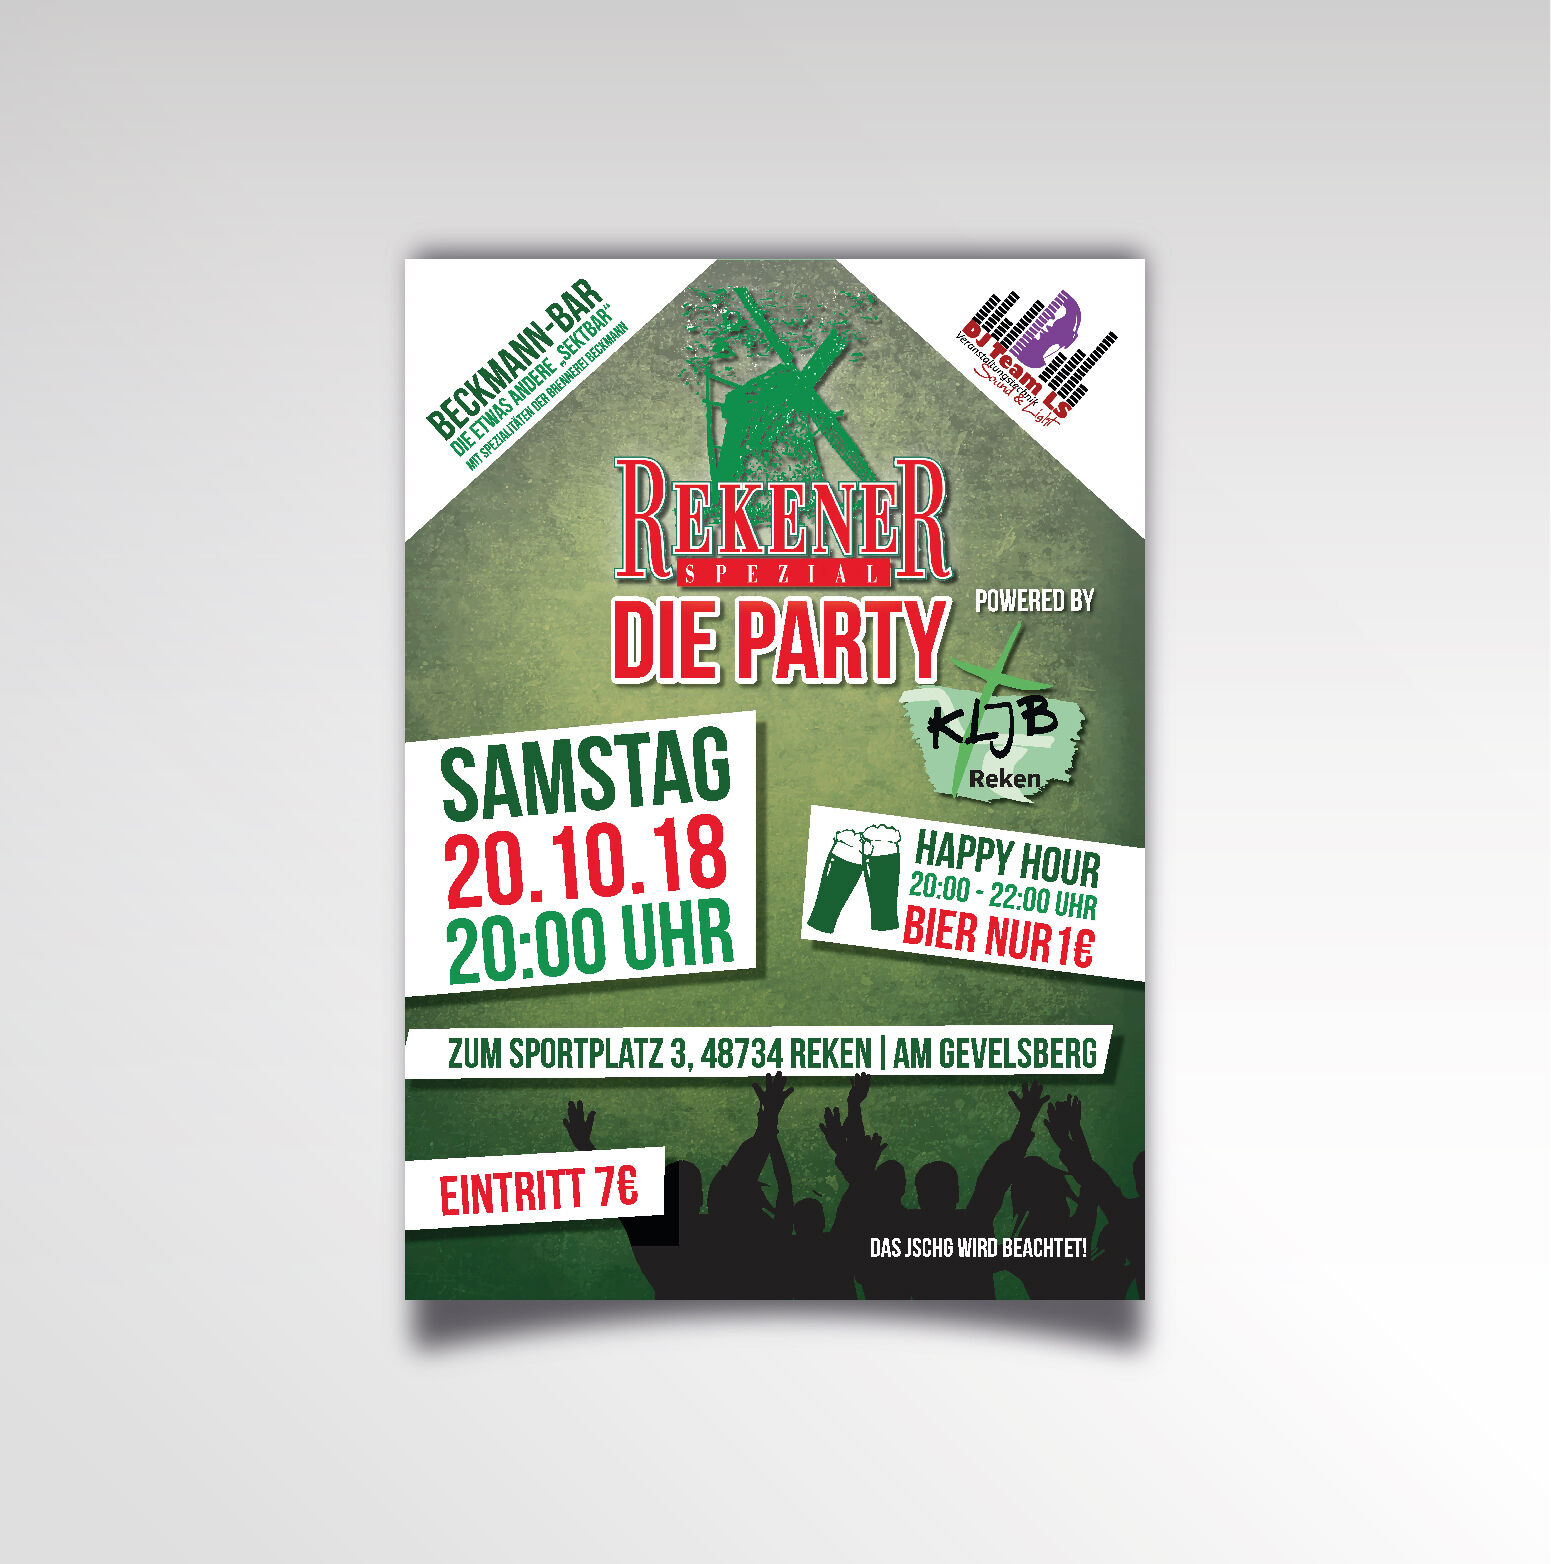 Rekner Spezial - Die Party Printprodukt Poster KLJB Reken Plakat